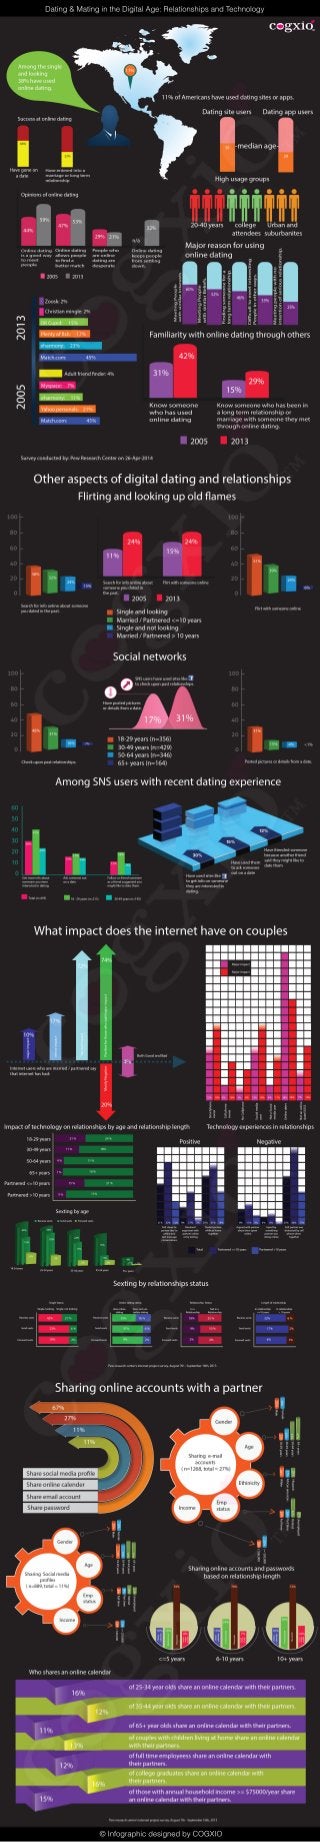 ©InfographicdesignedbyCOGXIO
Dating&MatingintheDigitalAge:RelationshipsandTechnology
 